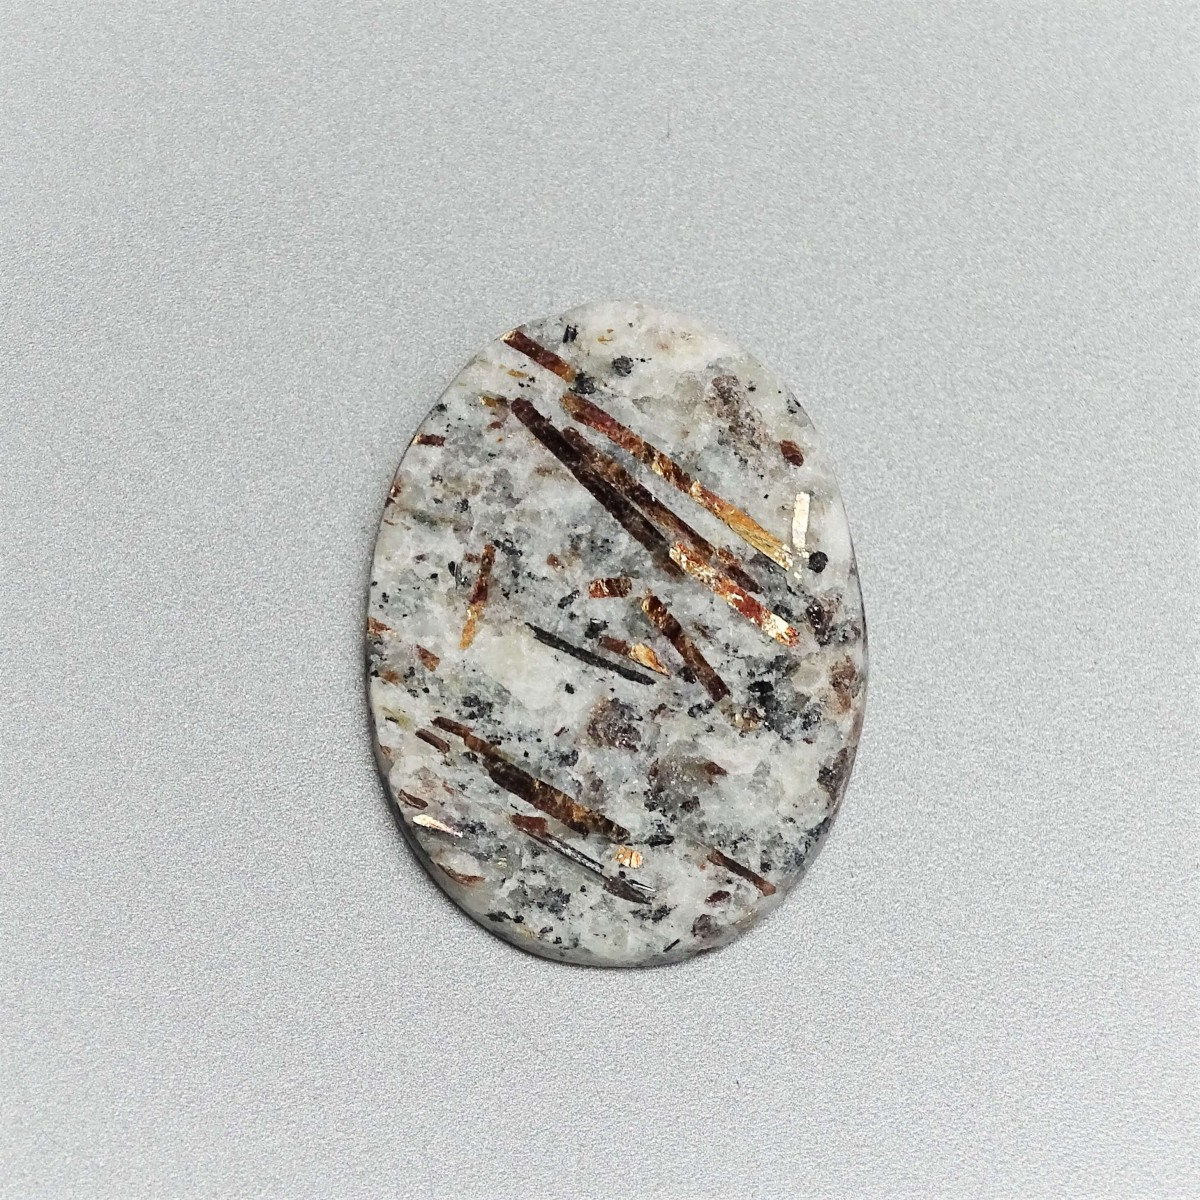 Astrophyllit-Cabochon, natürliches, unpoliertes Mineral 10,5g, Russland